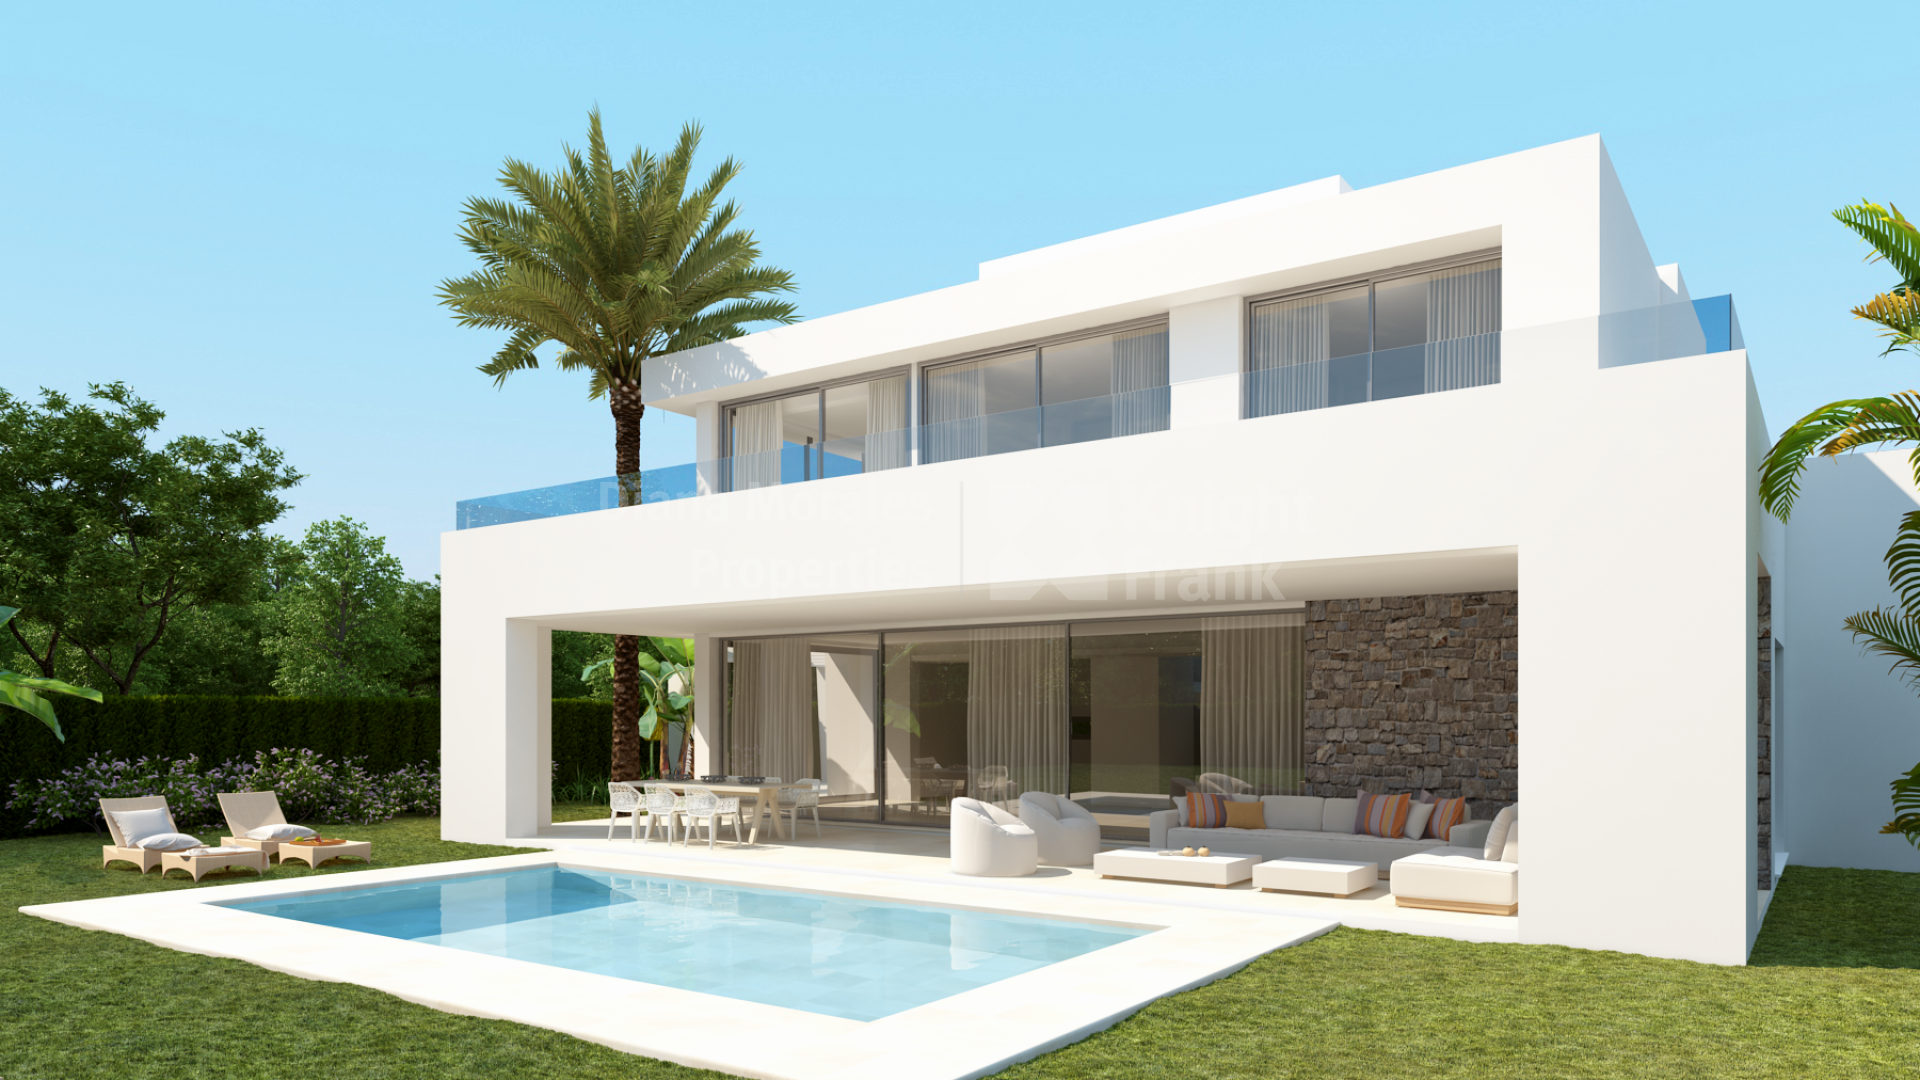 La Finca de Marbella 2, Residencial de 35 villas modernas de diseño